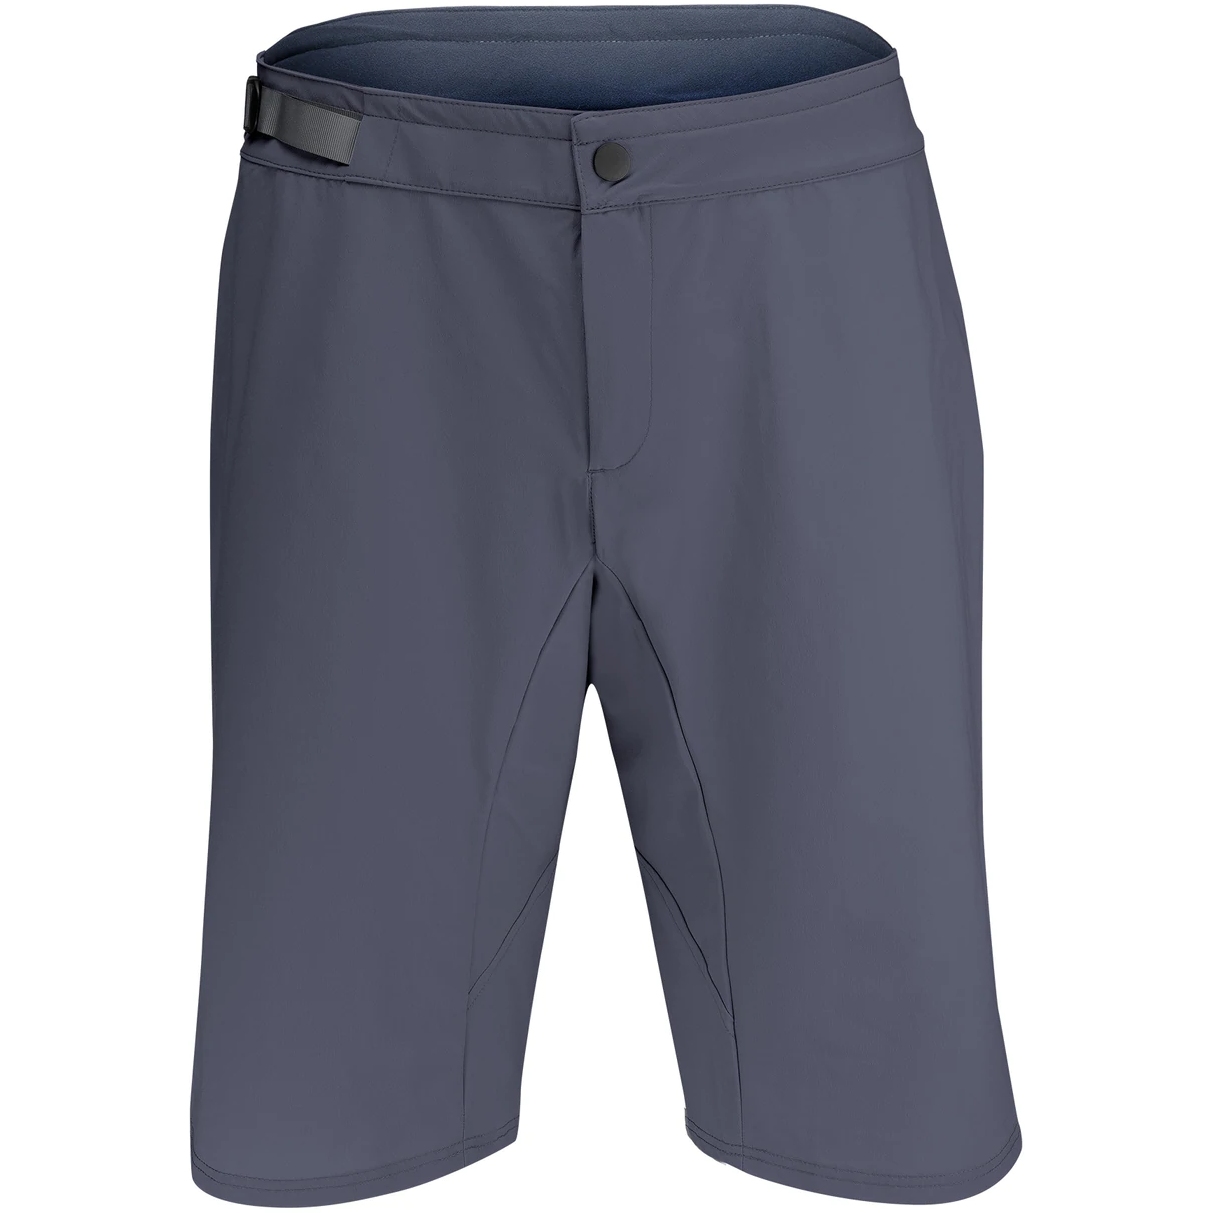 Produktbild von Velocio Trail Herren Shorts - Charcoal